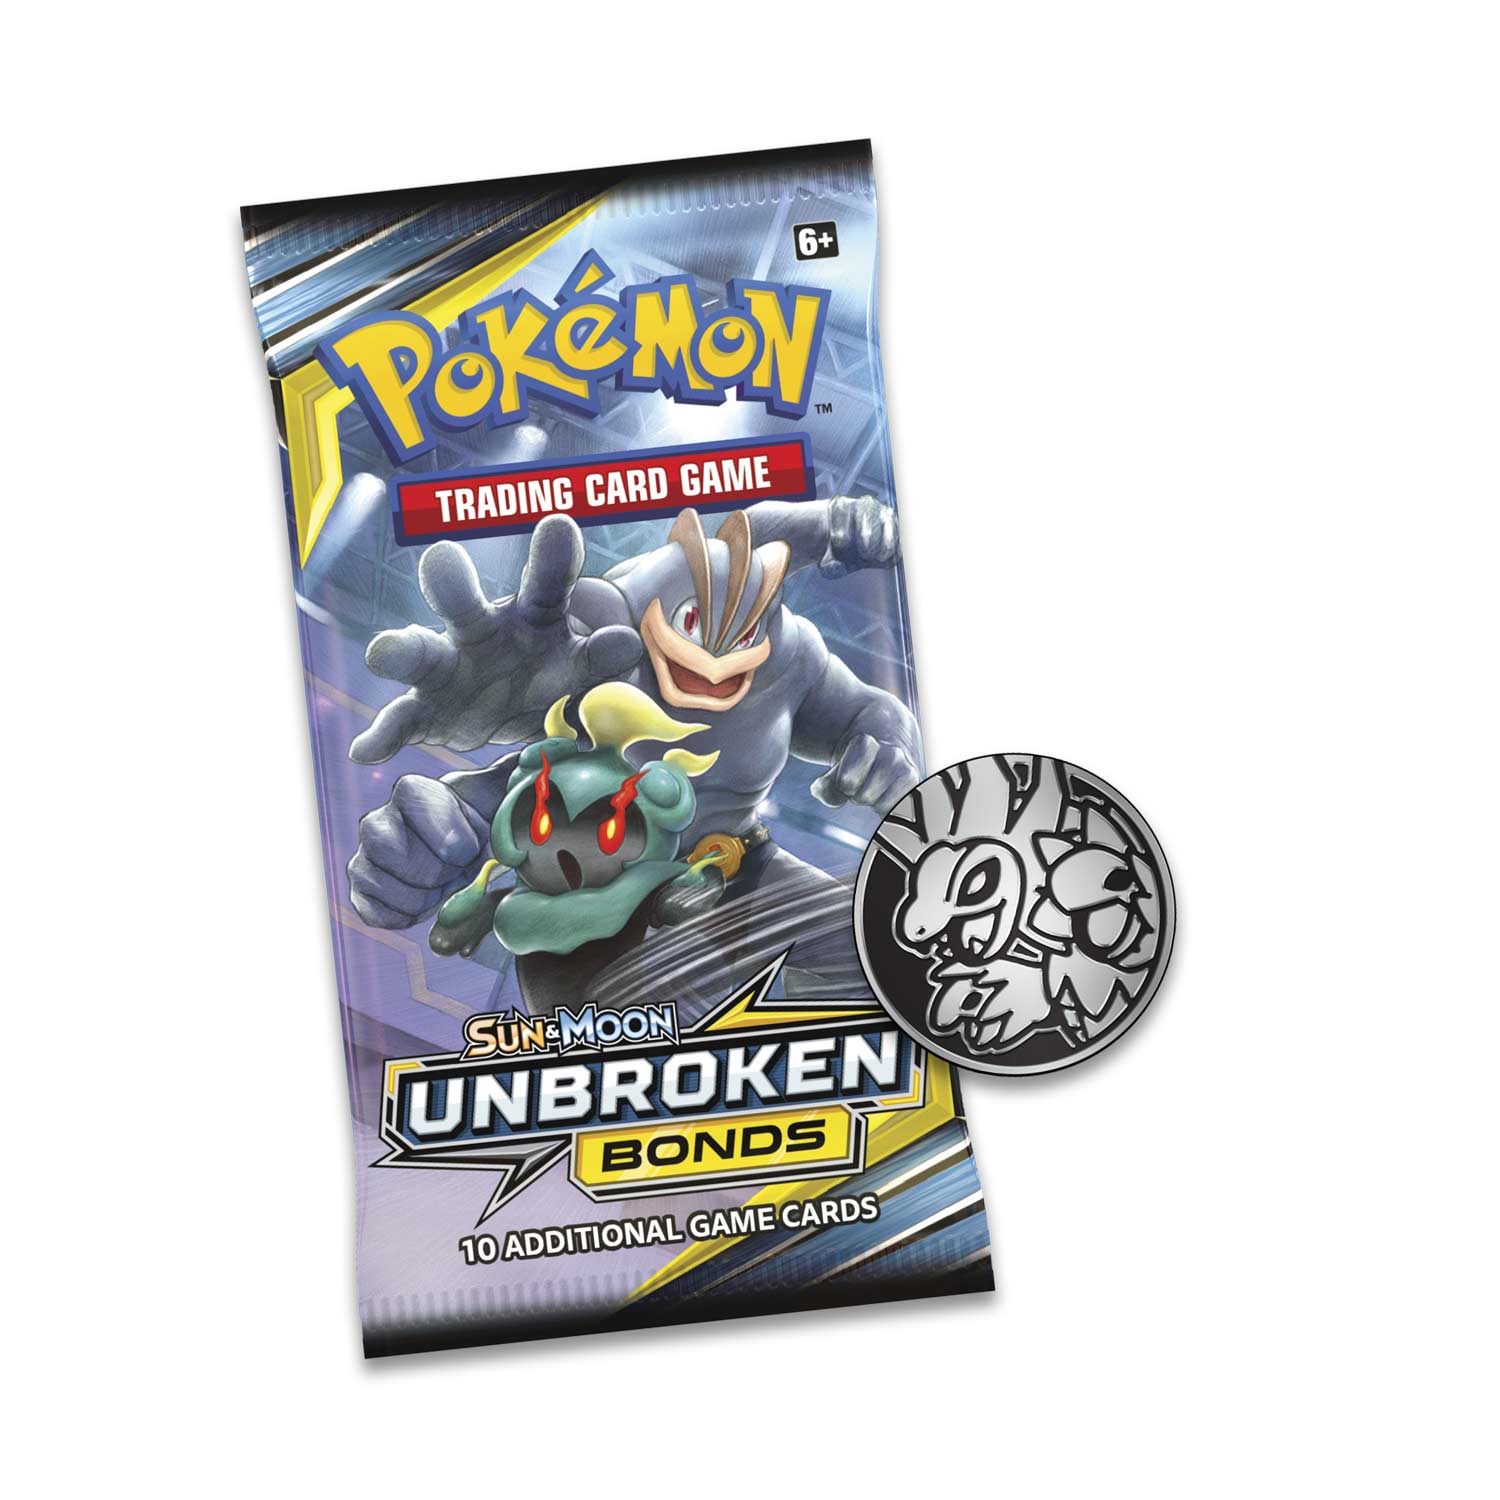 Pokémon TCG Unbroken Bonds Typhlosion Blister Pack! 3 Booster Pack Blister. 